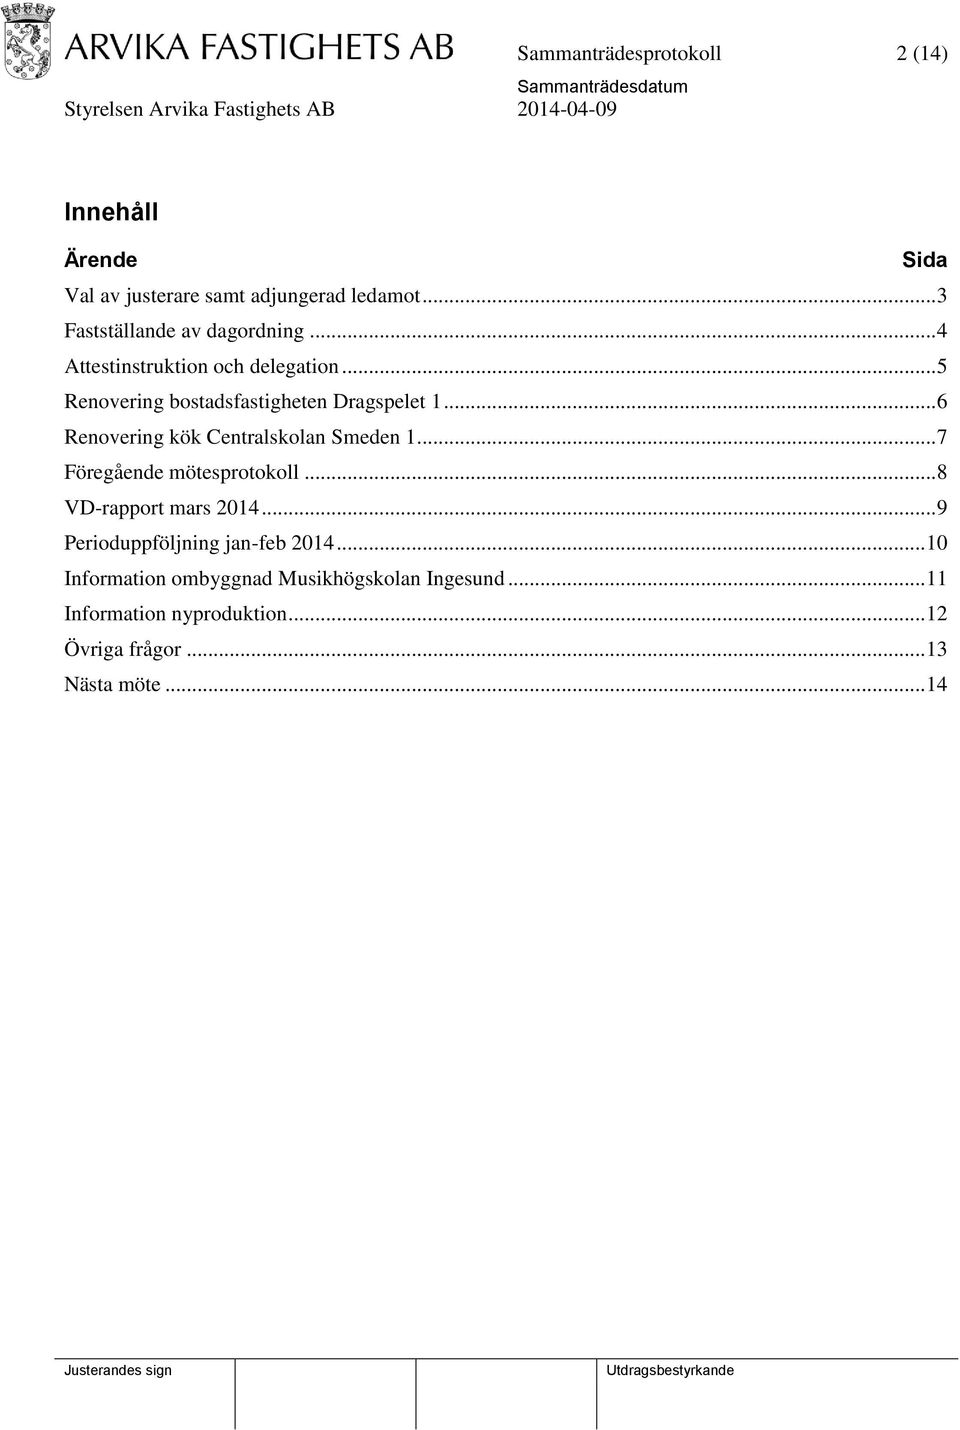 .. 6 Renovering kök Centralskolan Smeden 1... 7 Föregående mötesprotokoll... 8 VD-rapport mars 2014.